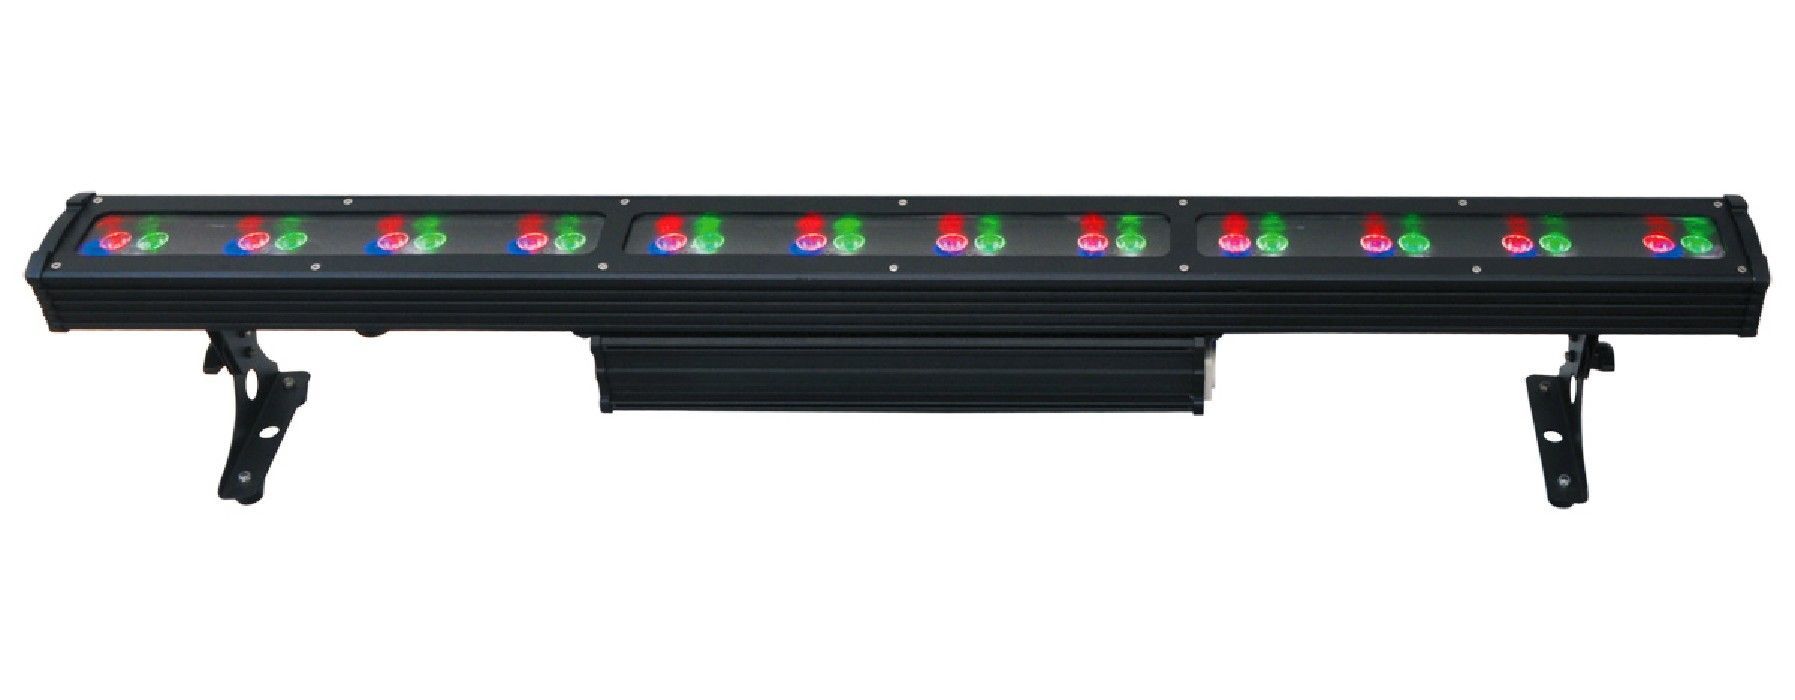 Картинка Прожектор Dialighting LED Bar 48 RGBW LEDs, FC-8 - лучшая цена, доставка по России. Фото N2